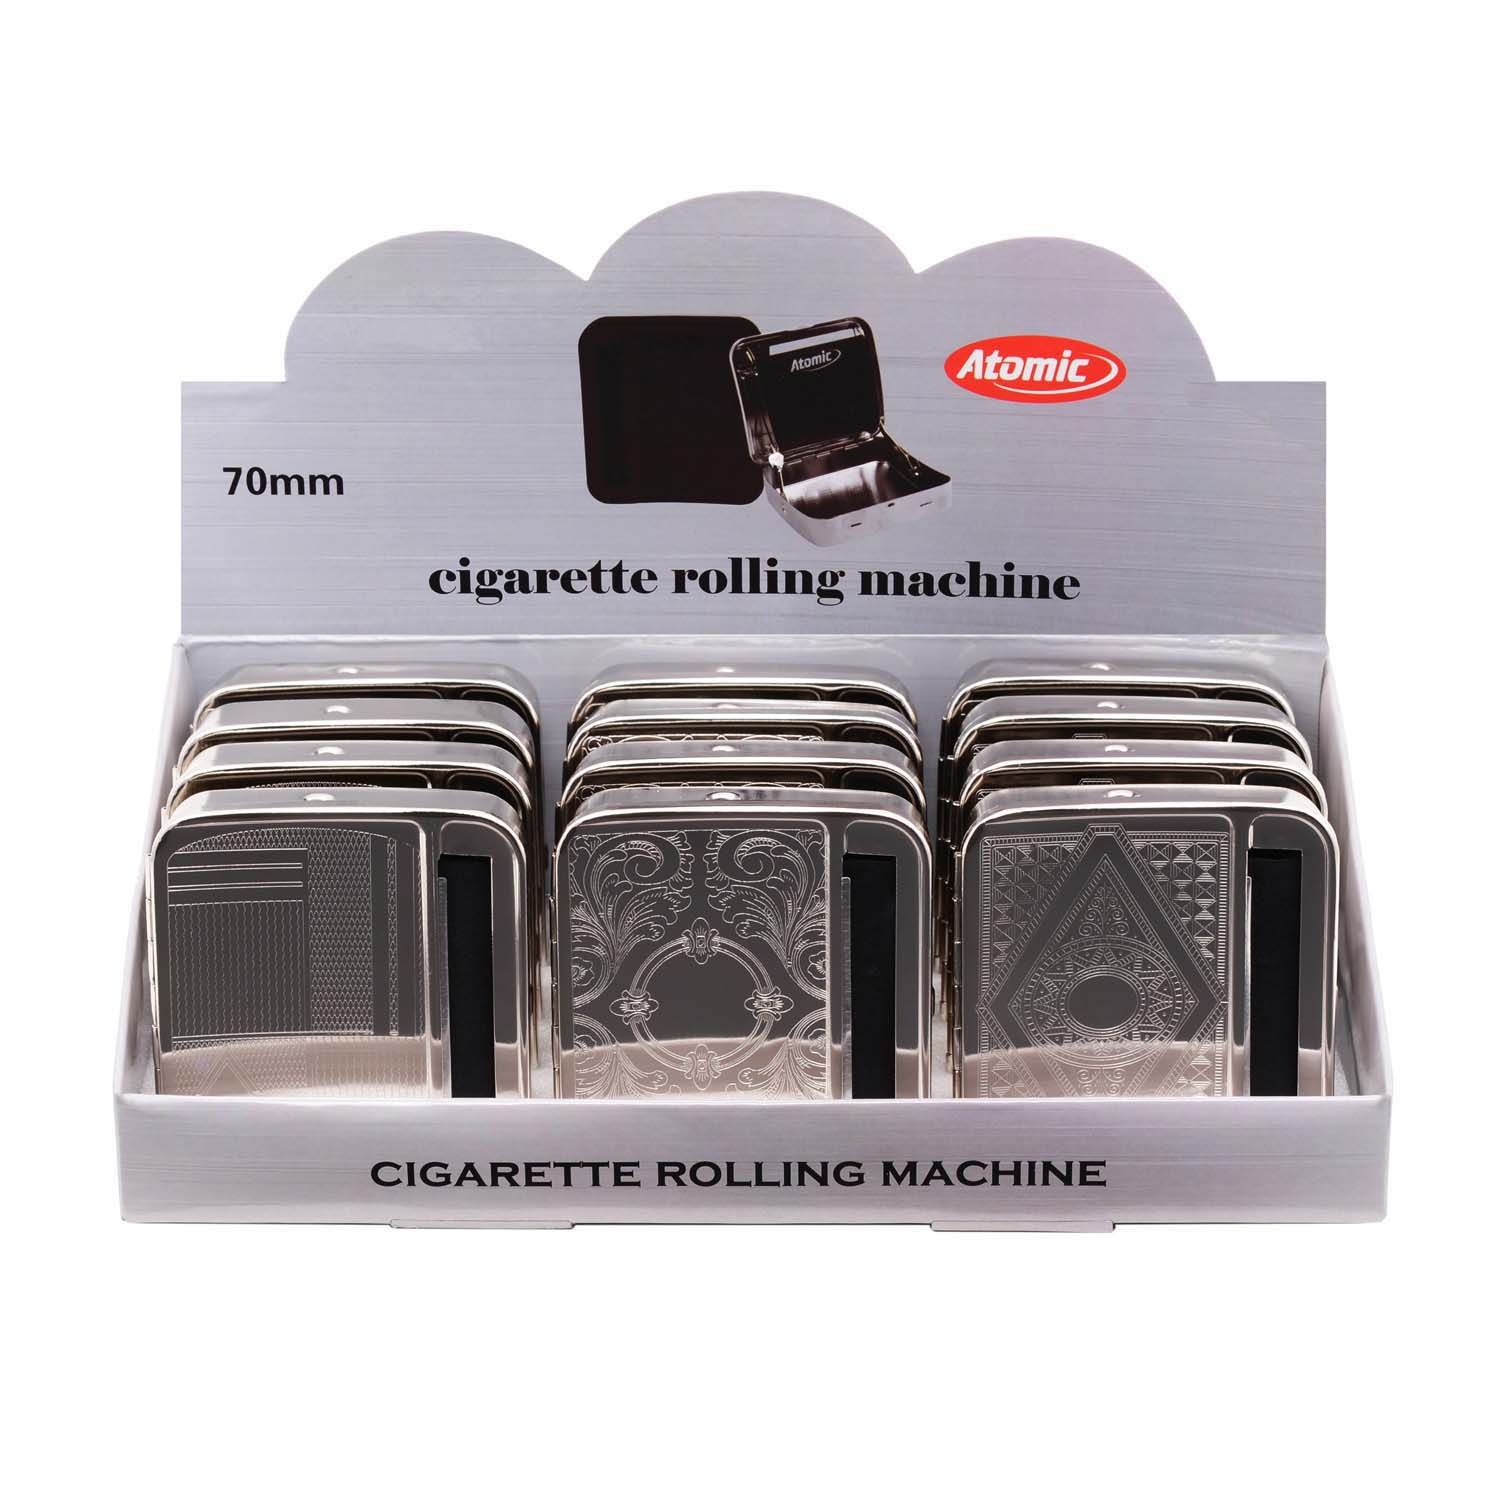 Zigaretten-Rollbox (12) ATOMIC chrom 70mm 4-fach sortiert 